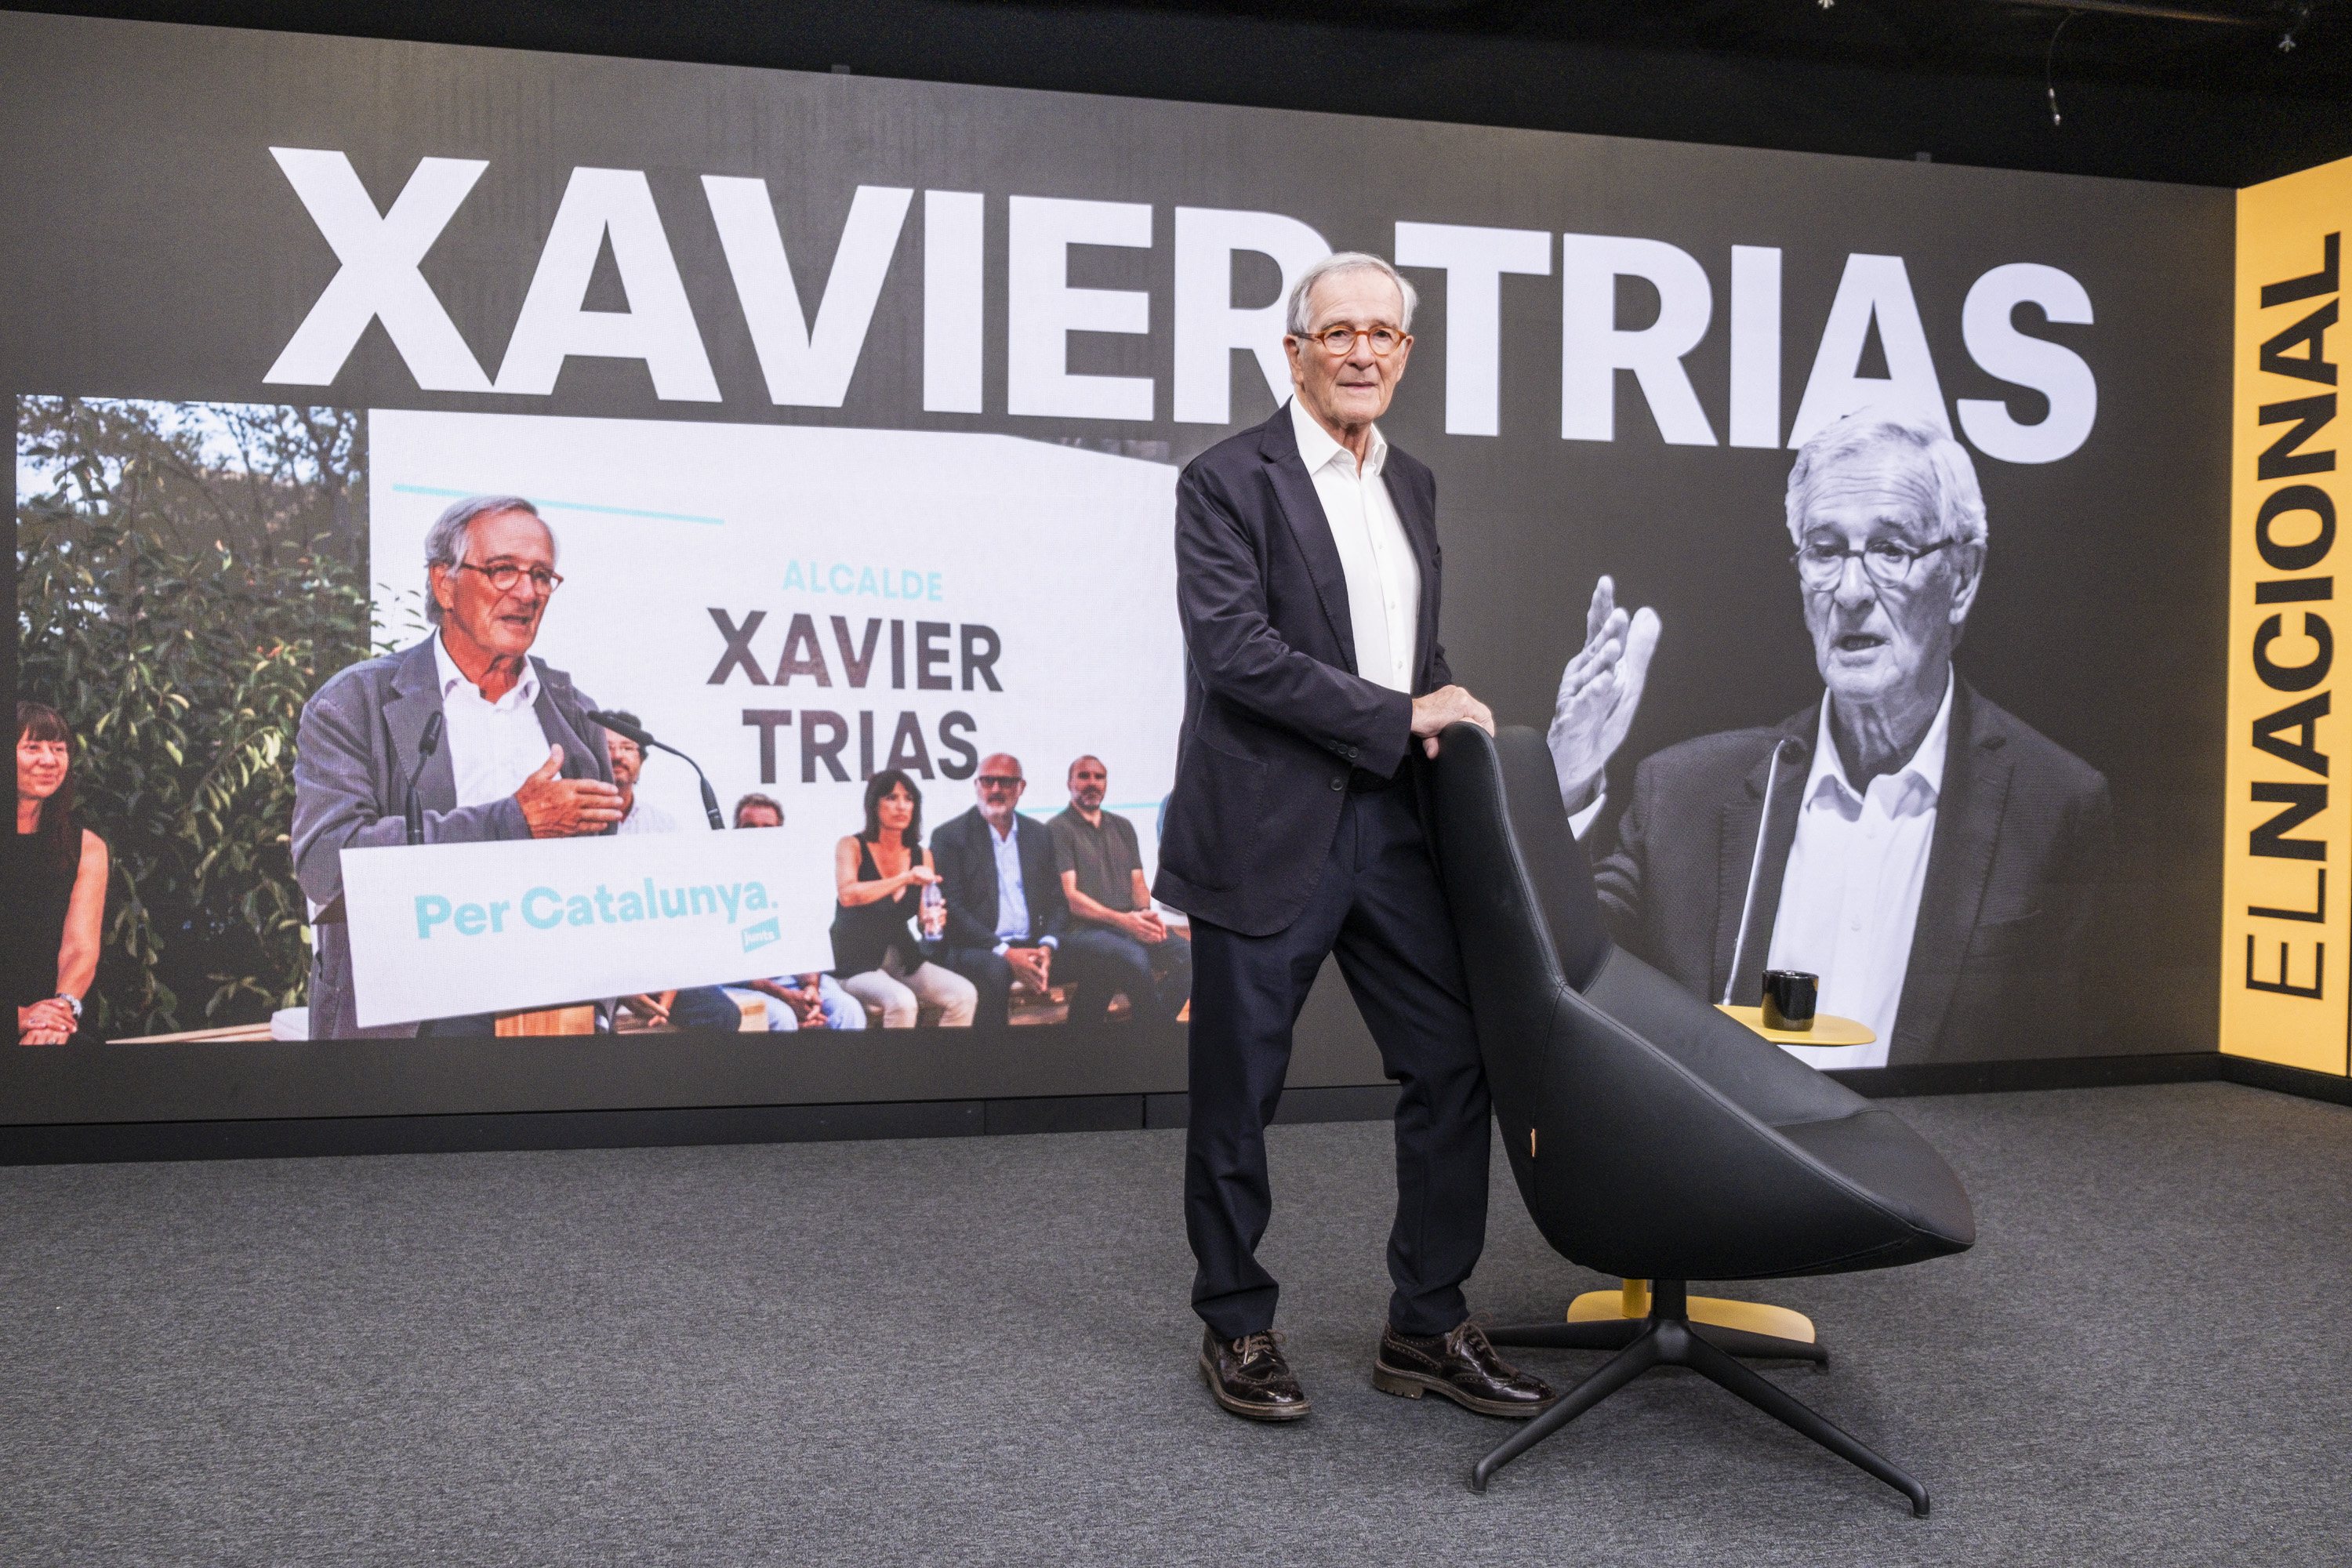 Xavier Trias, indignado con las novedades de la Operación Catalunya: "Me consideraba amigo de Rajoy"